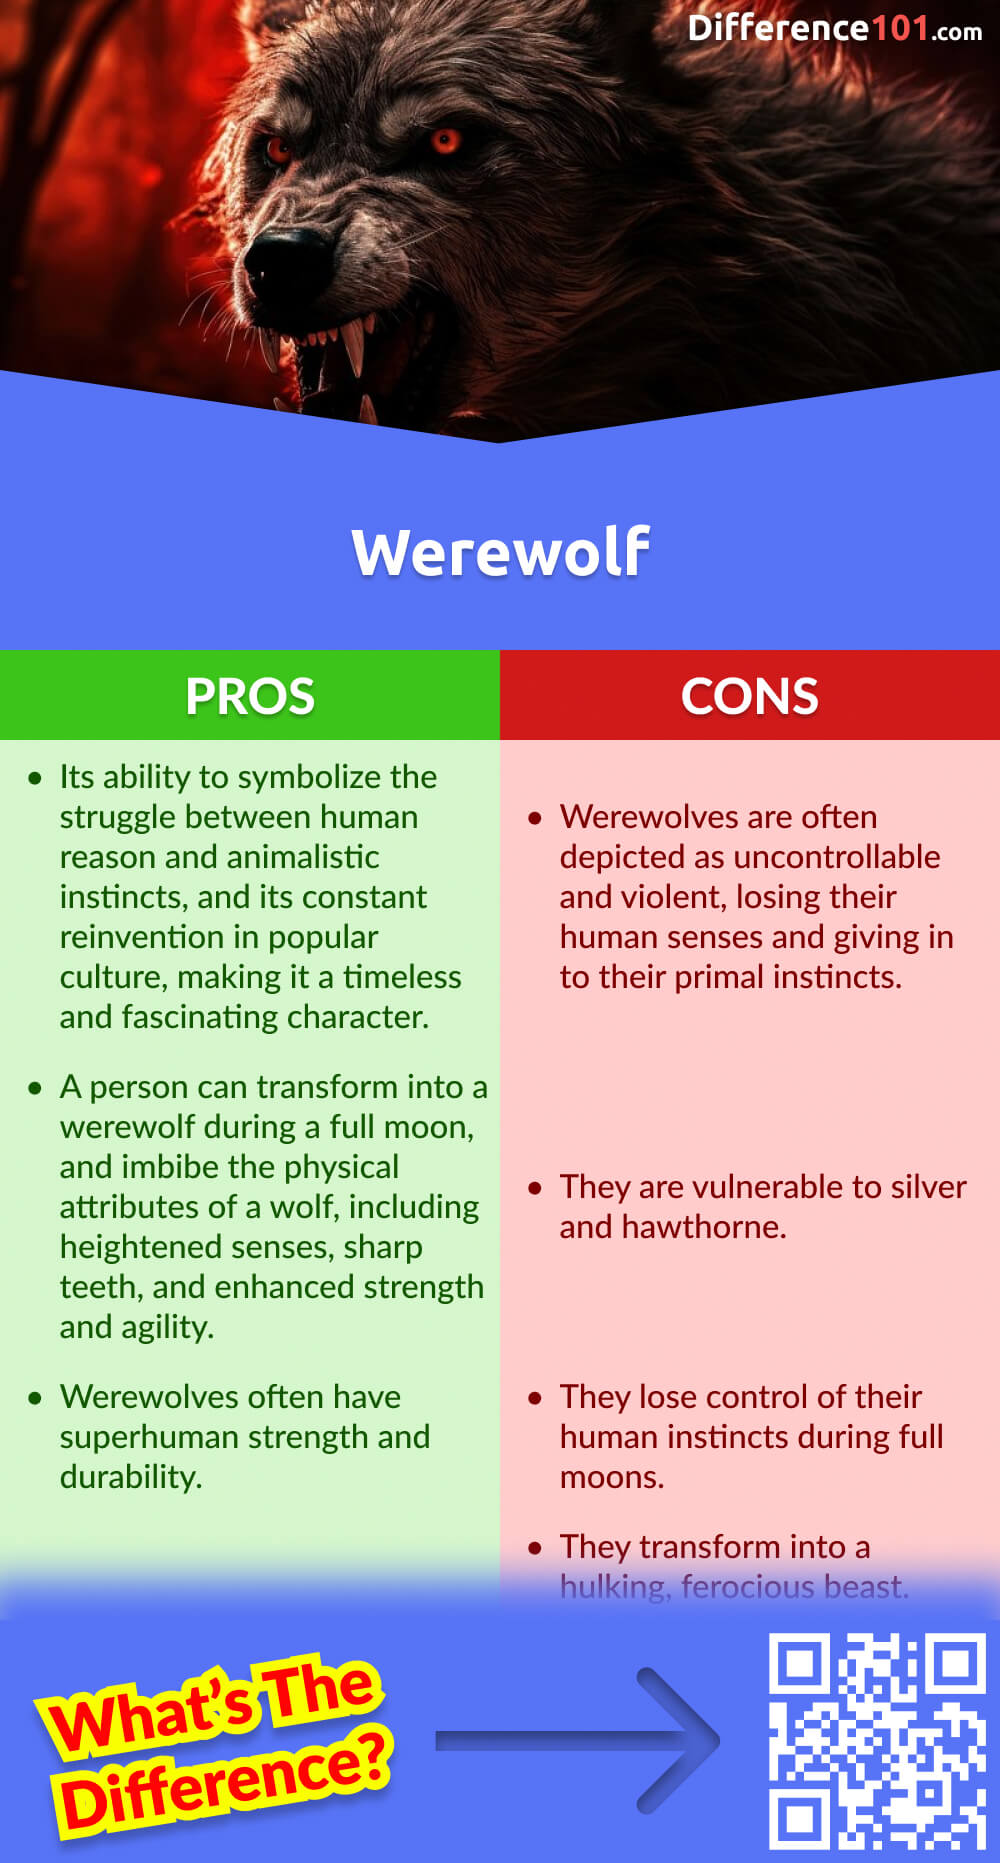 Werewolf Pros & Cons